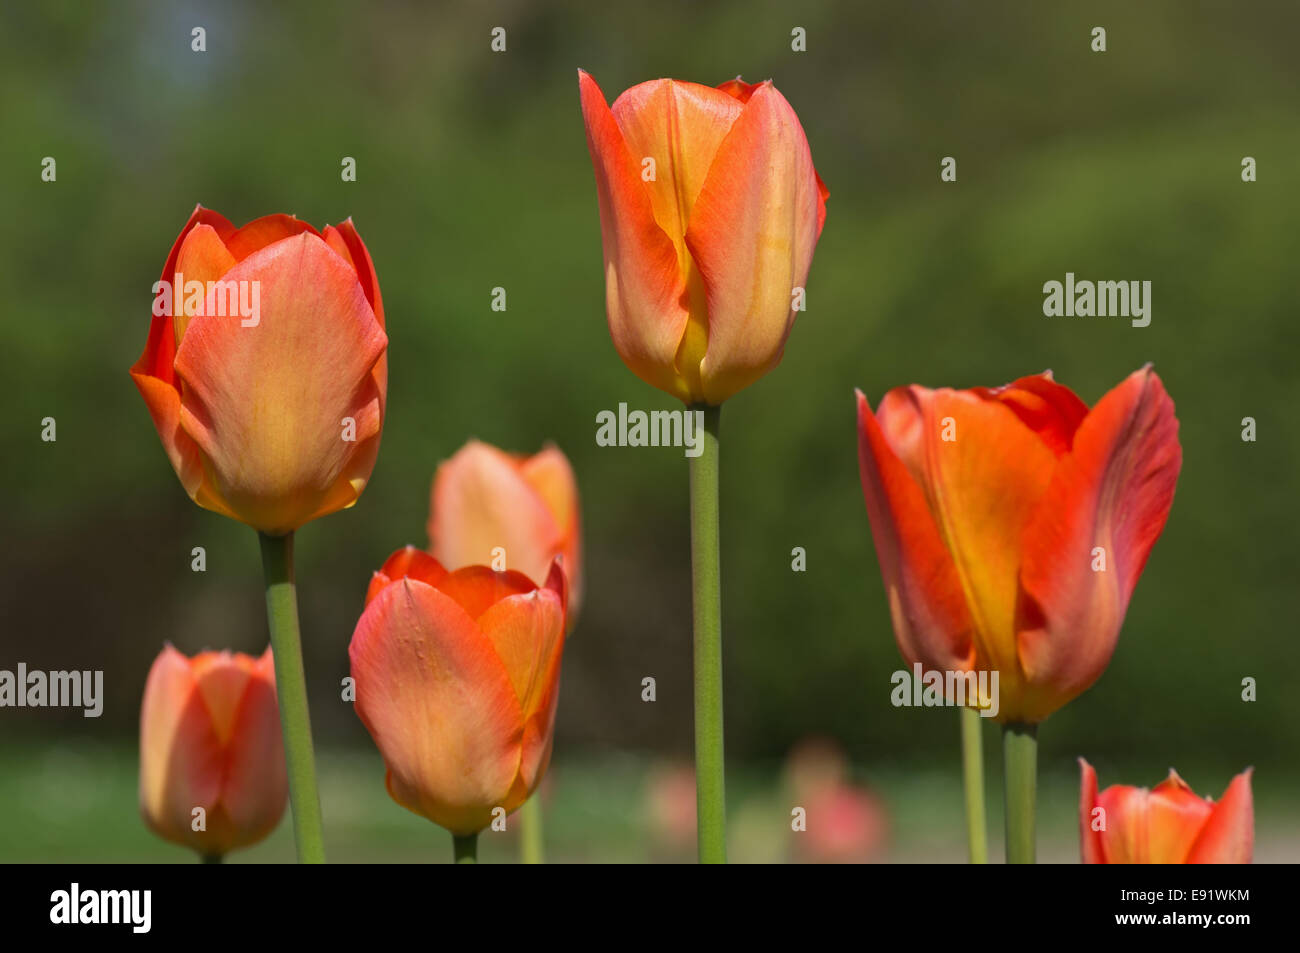 Orange-red tulips Stock Photo